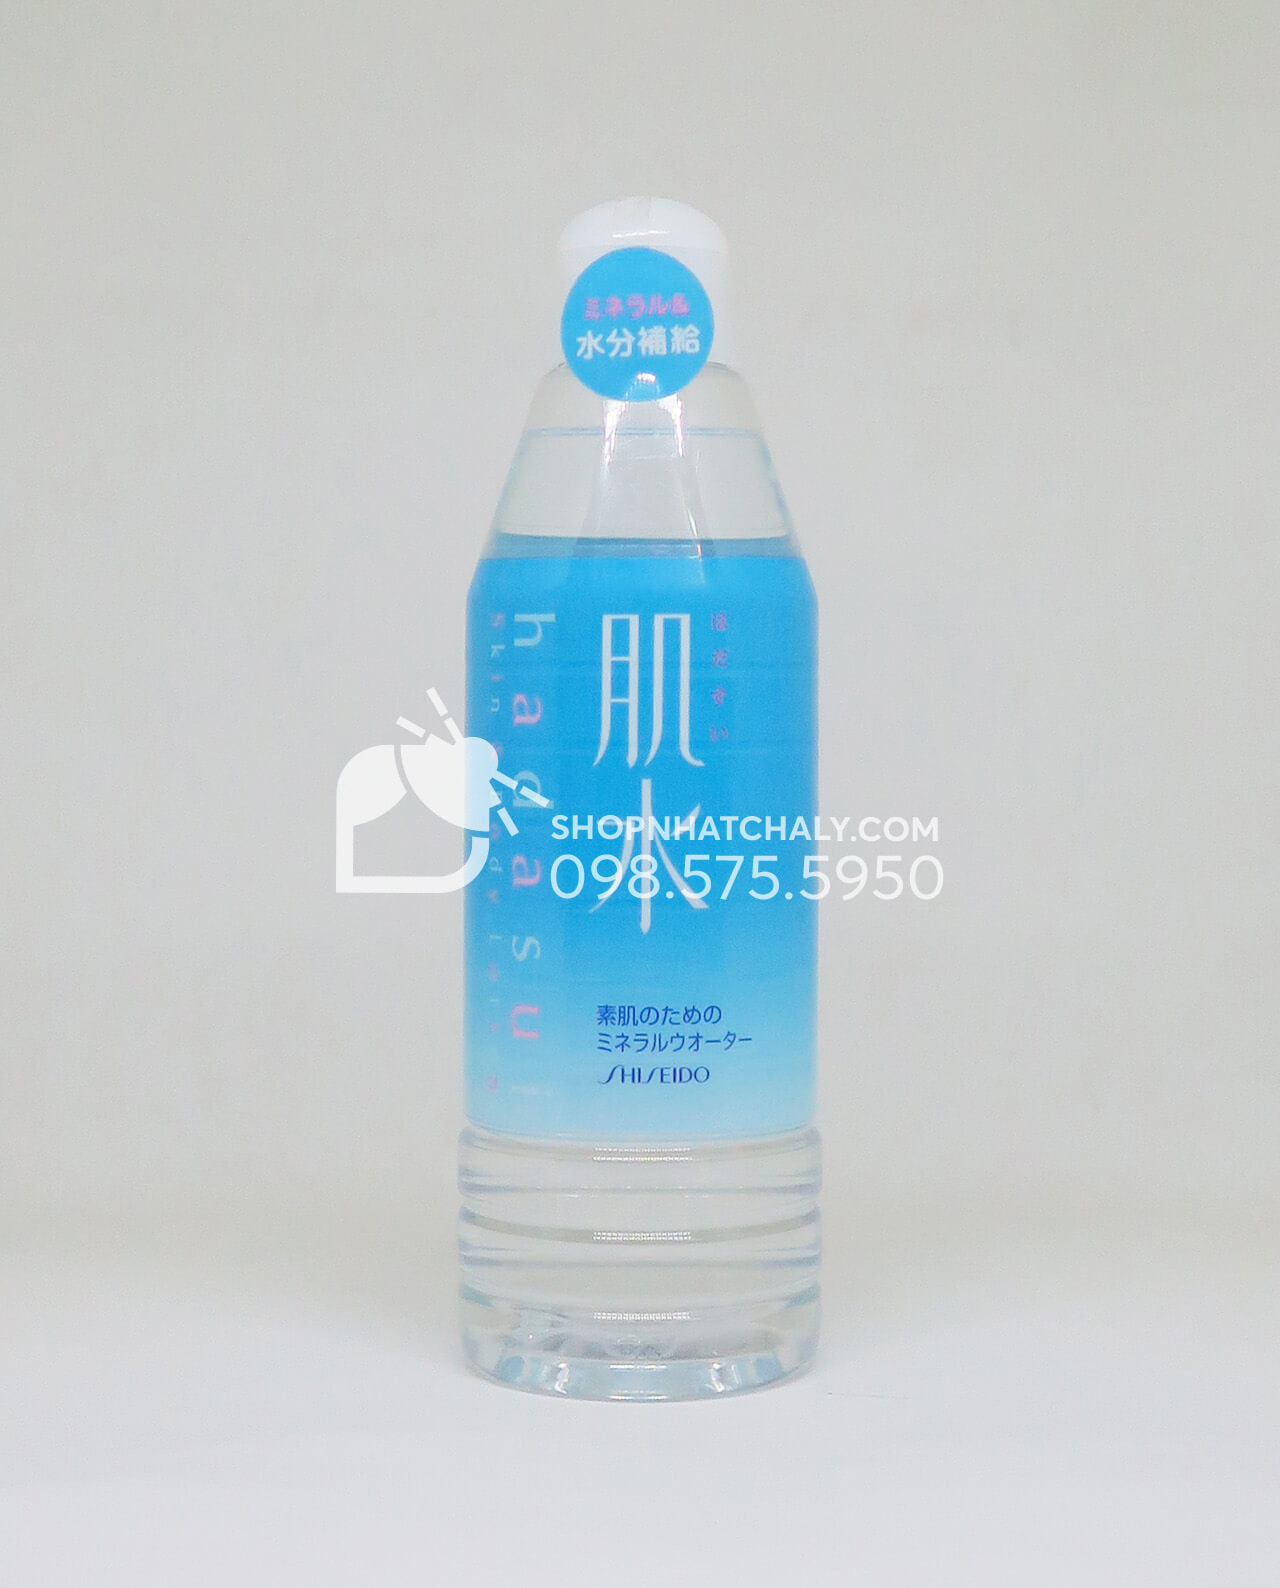 Nước xịt khoáng Shiseido Hadasui 400ml Nhật Bản xanh Mineral water